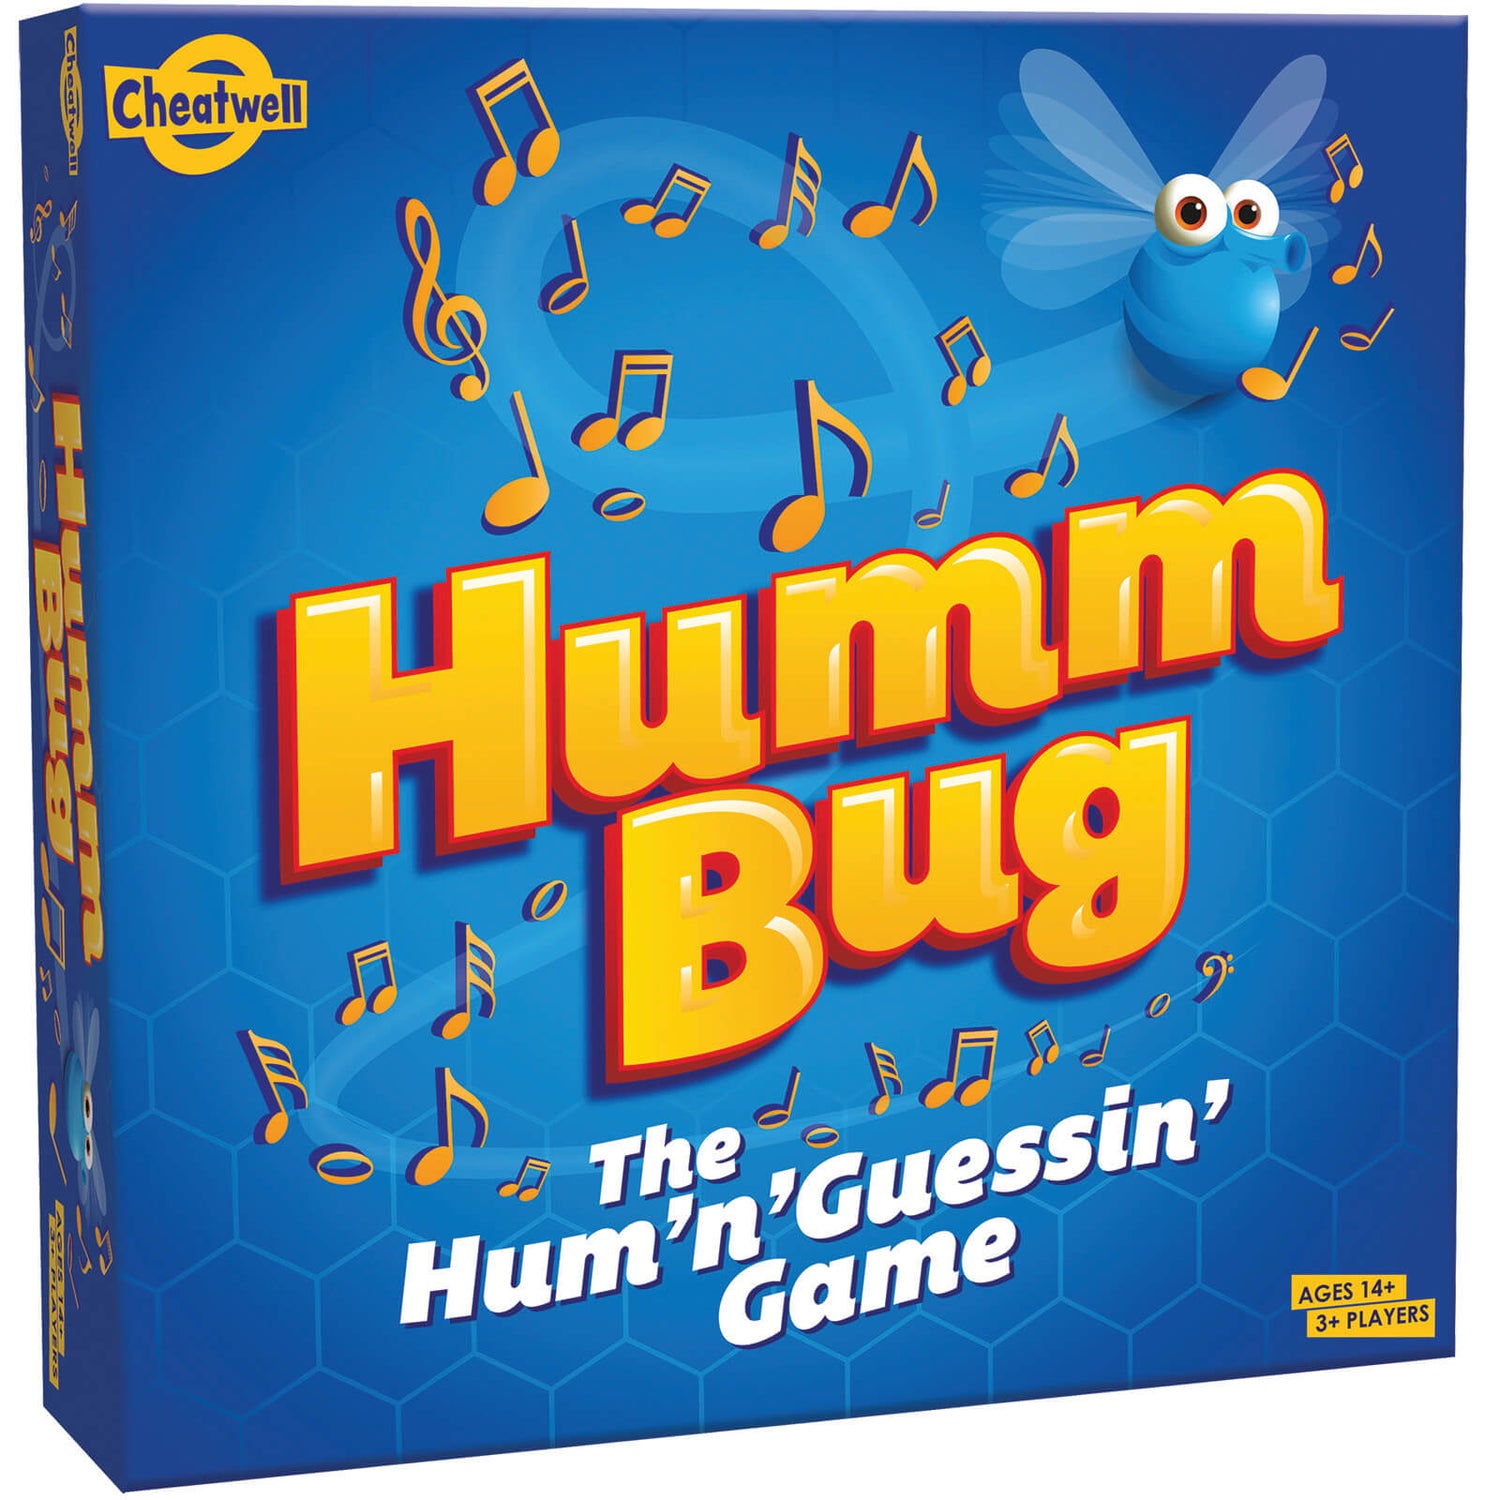 Humm Bug Board Game